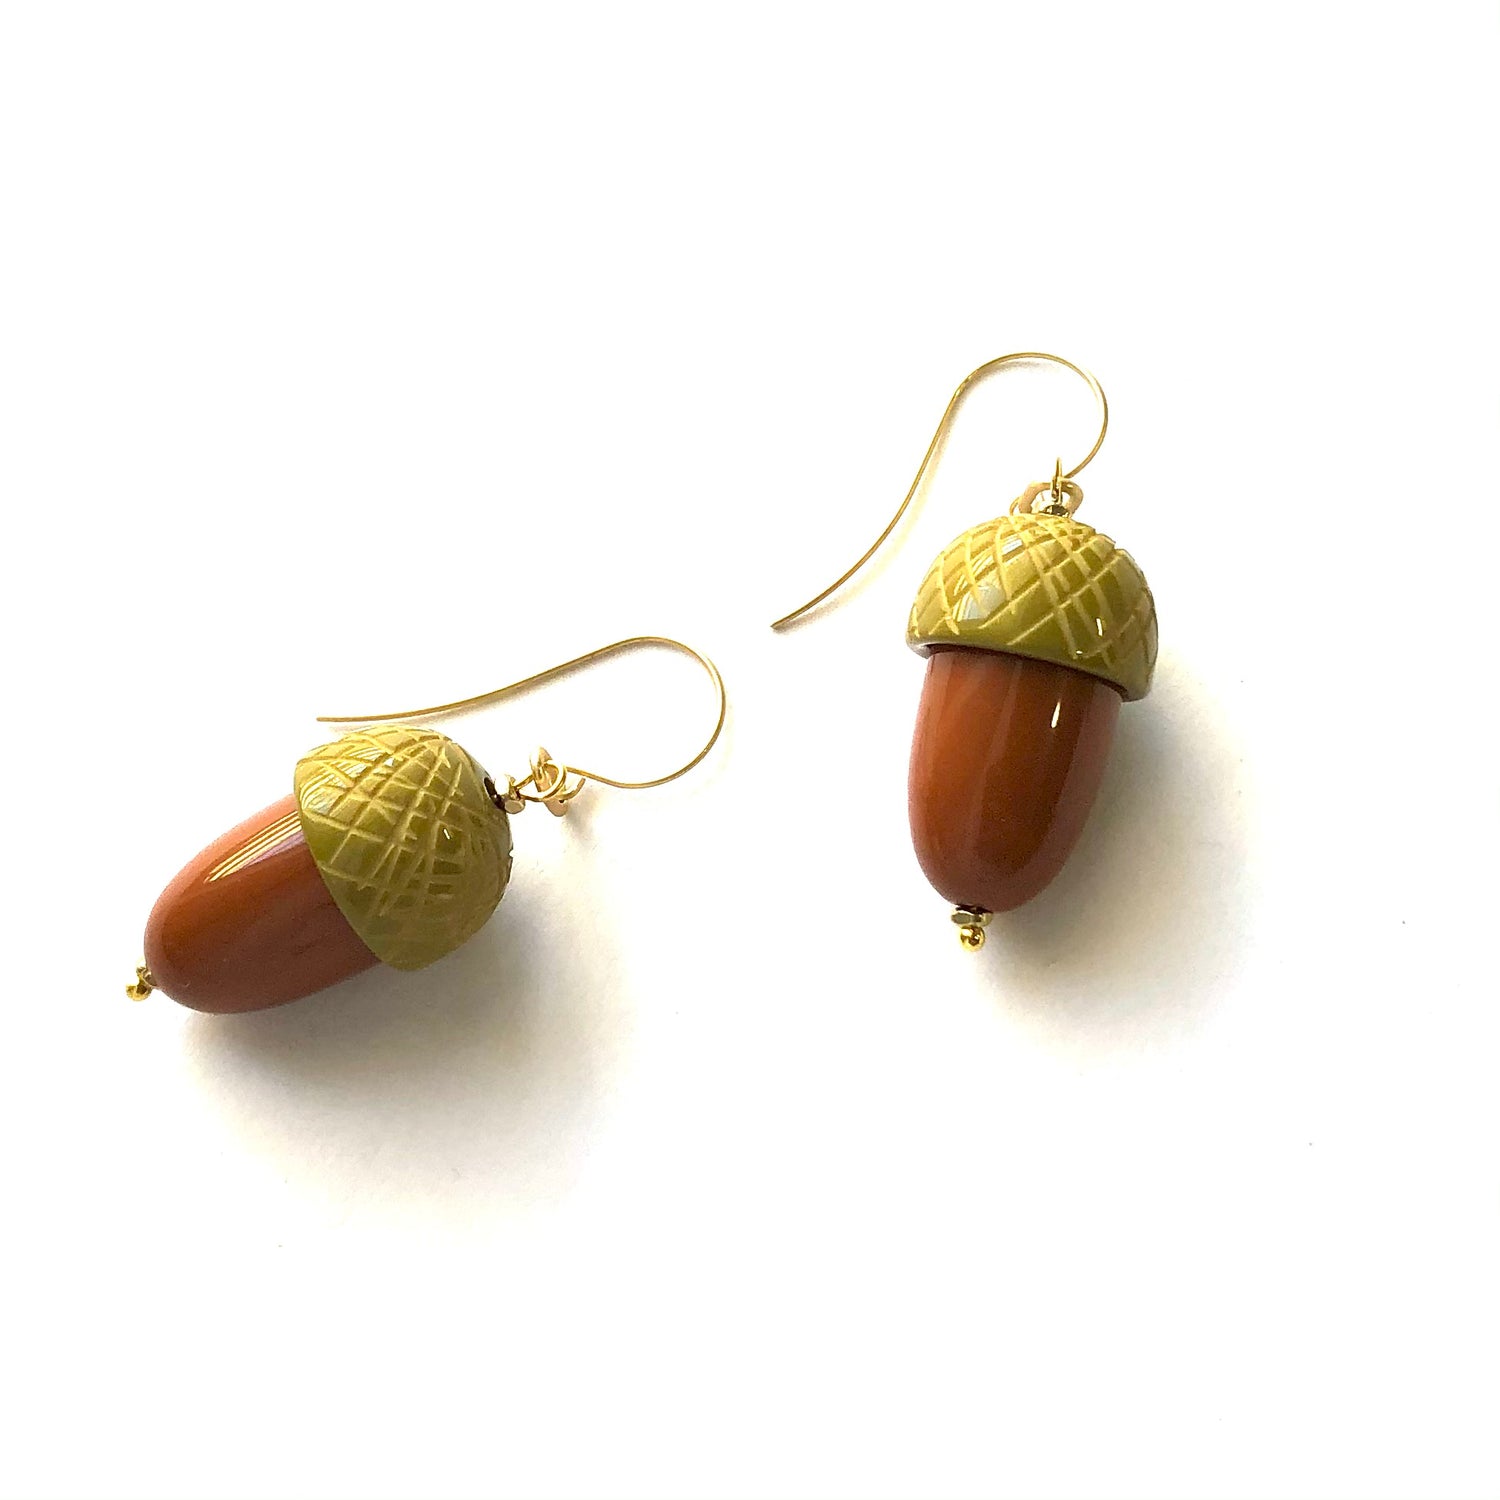 acorn earrings jewelry